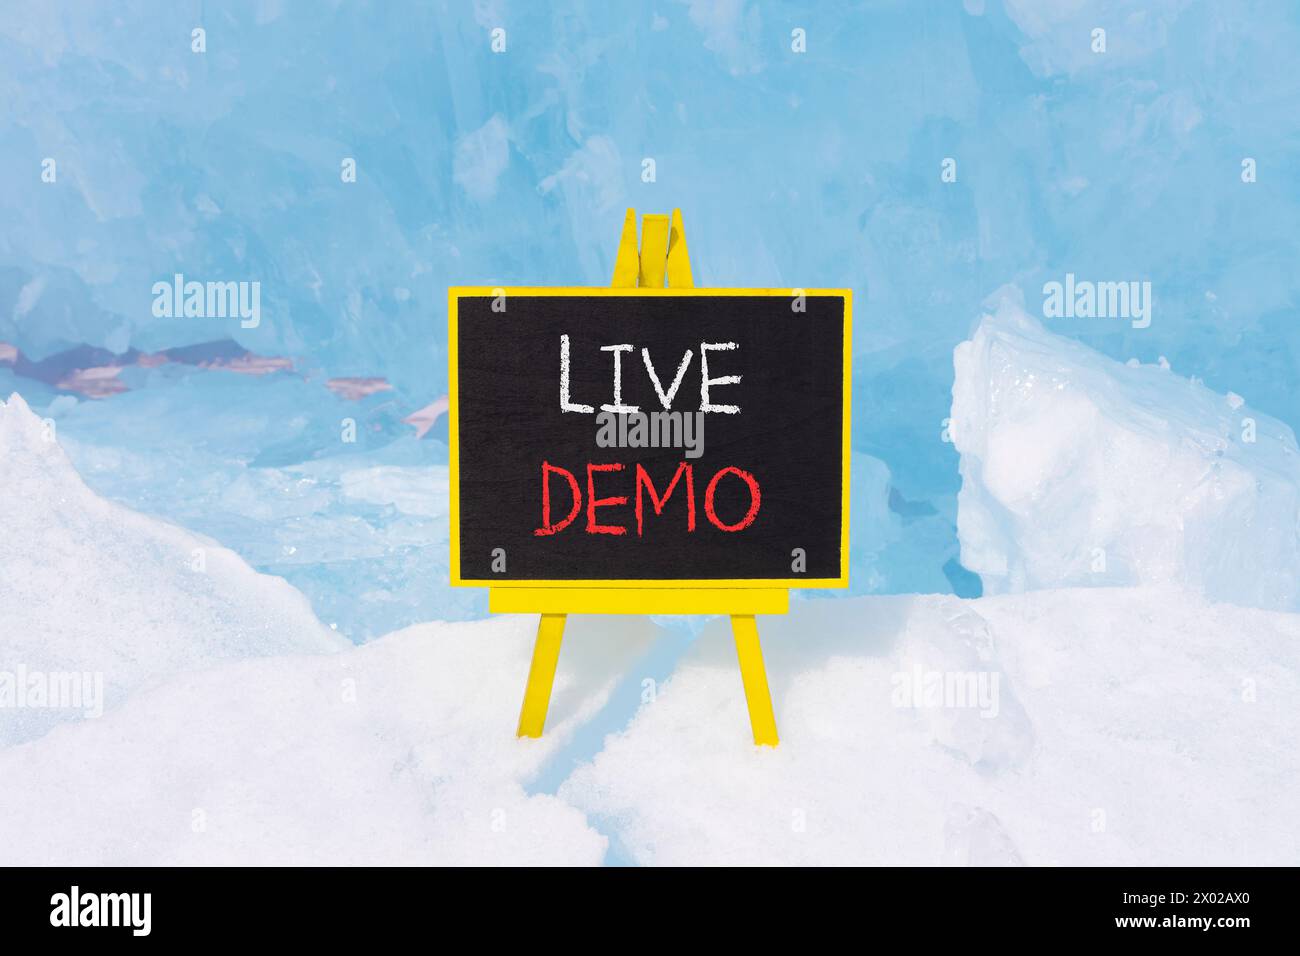 Simbolo demo dal vivo. Demo di Concept Words Live su una bellissima lavagna nera gialla. Bellissimo sfondo blu di ghiaccio. Copia spazio. Conc. Demo aziendali e live Foto Stock